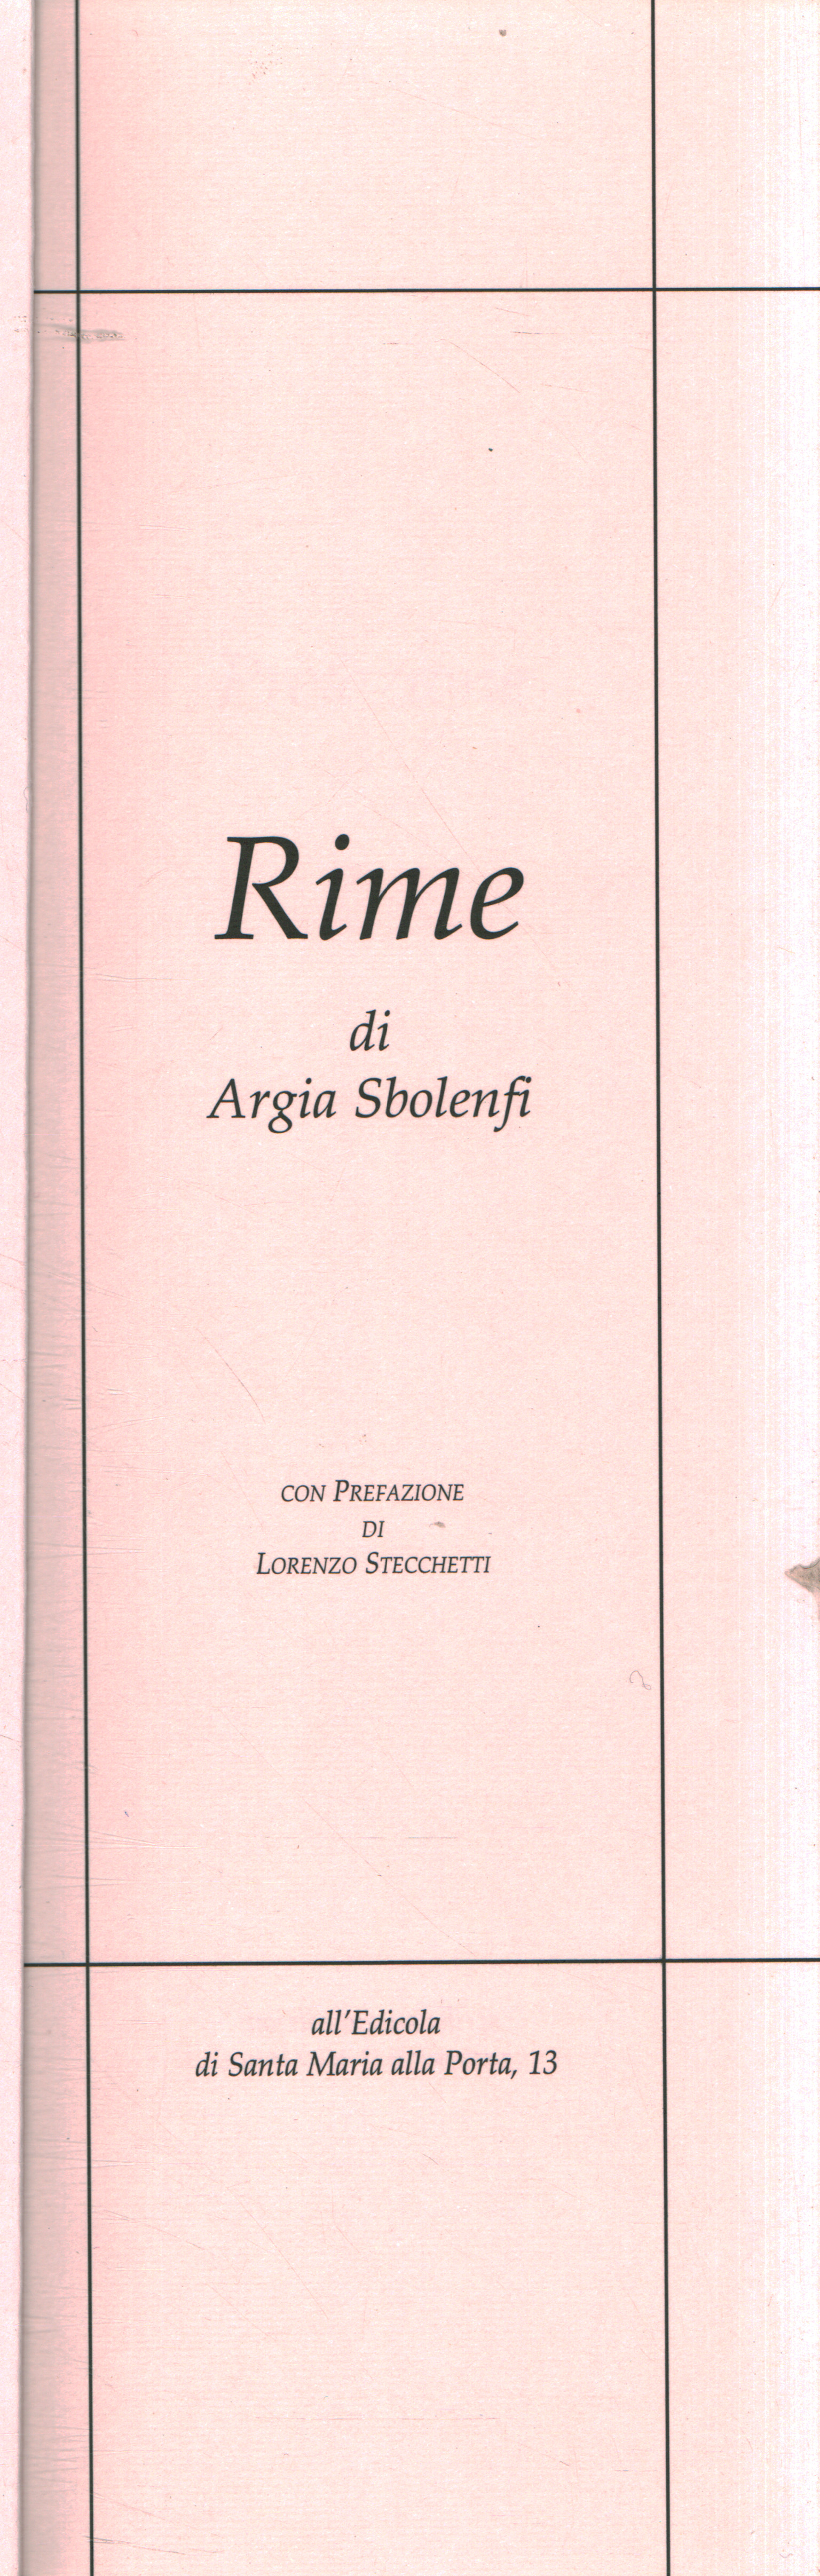 Reime von Argia Sbolenfi